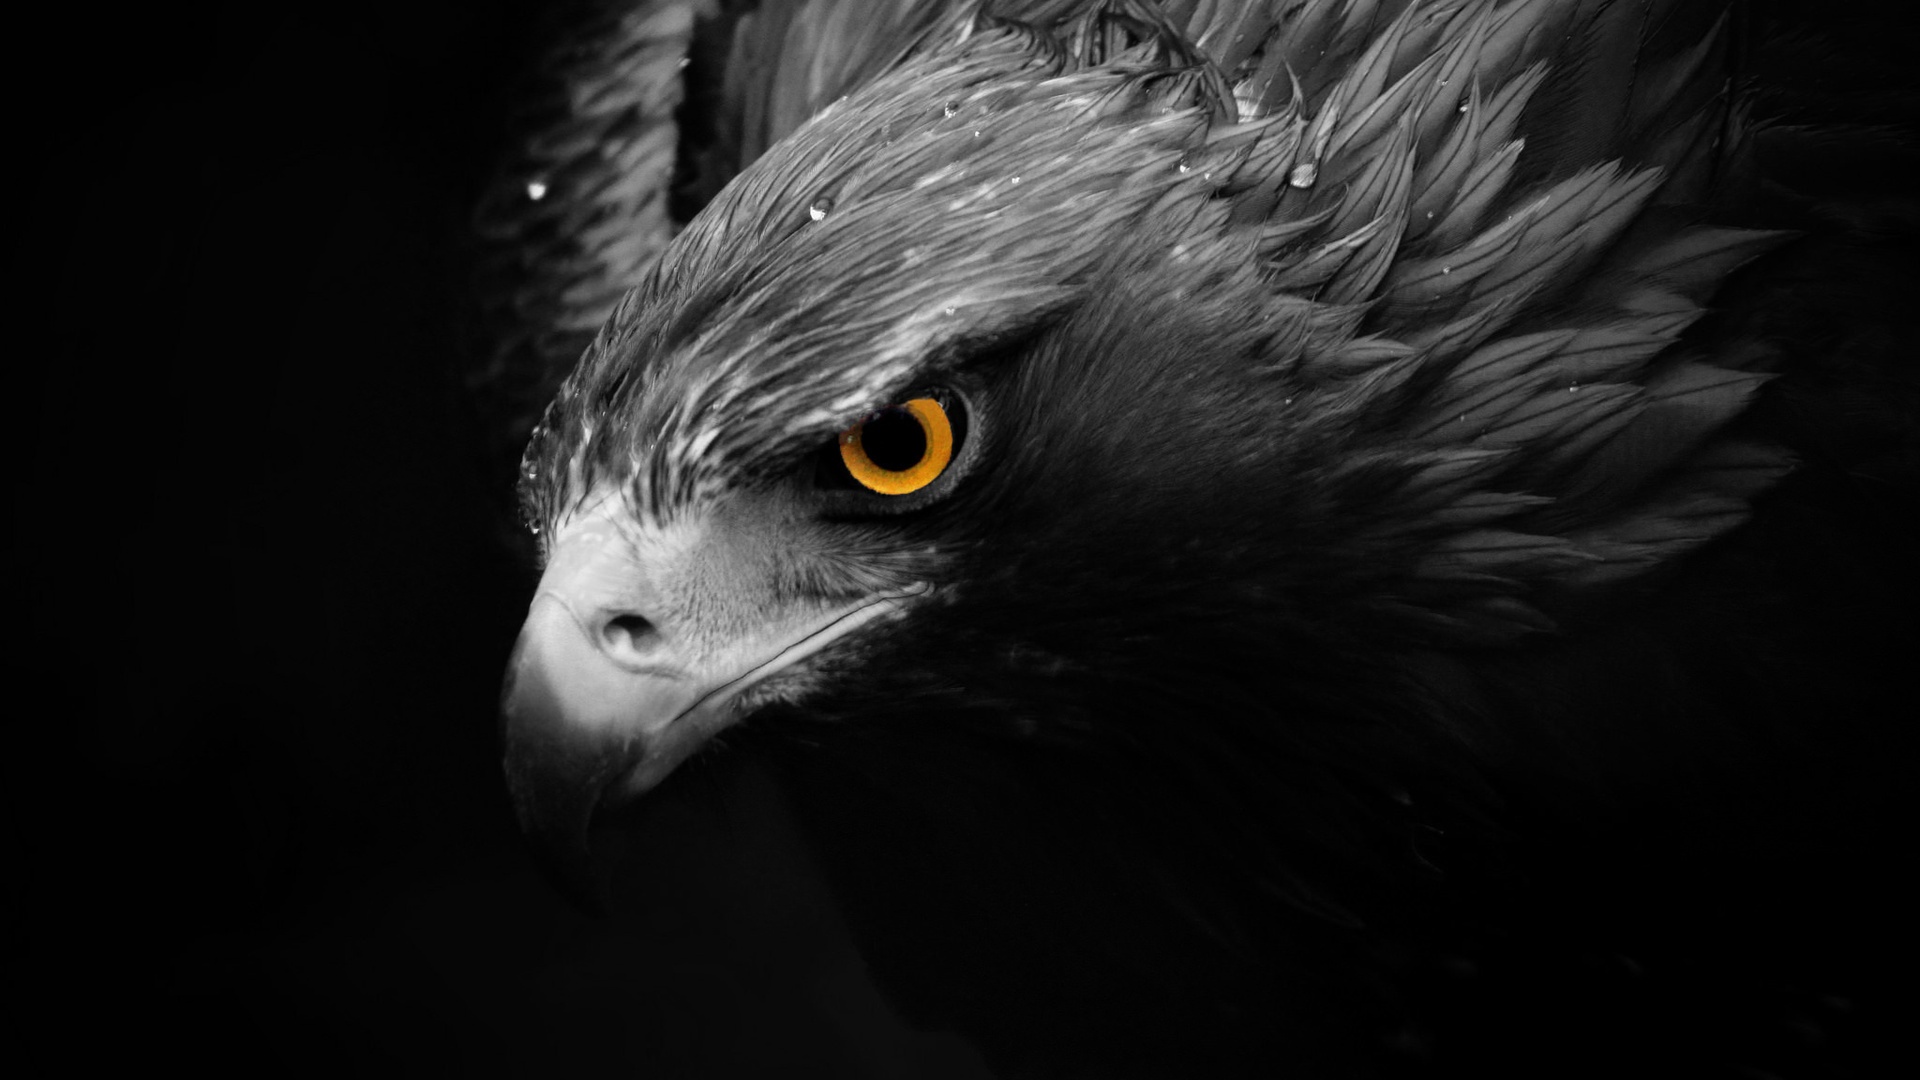 aguia wallpaper,pájaro,ave de rapiña,águila,águila dorada,accipitriformes